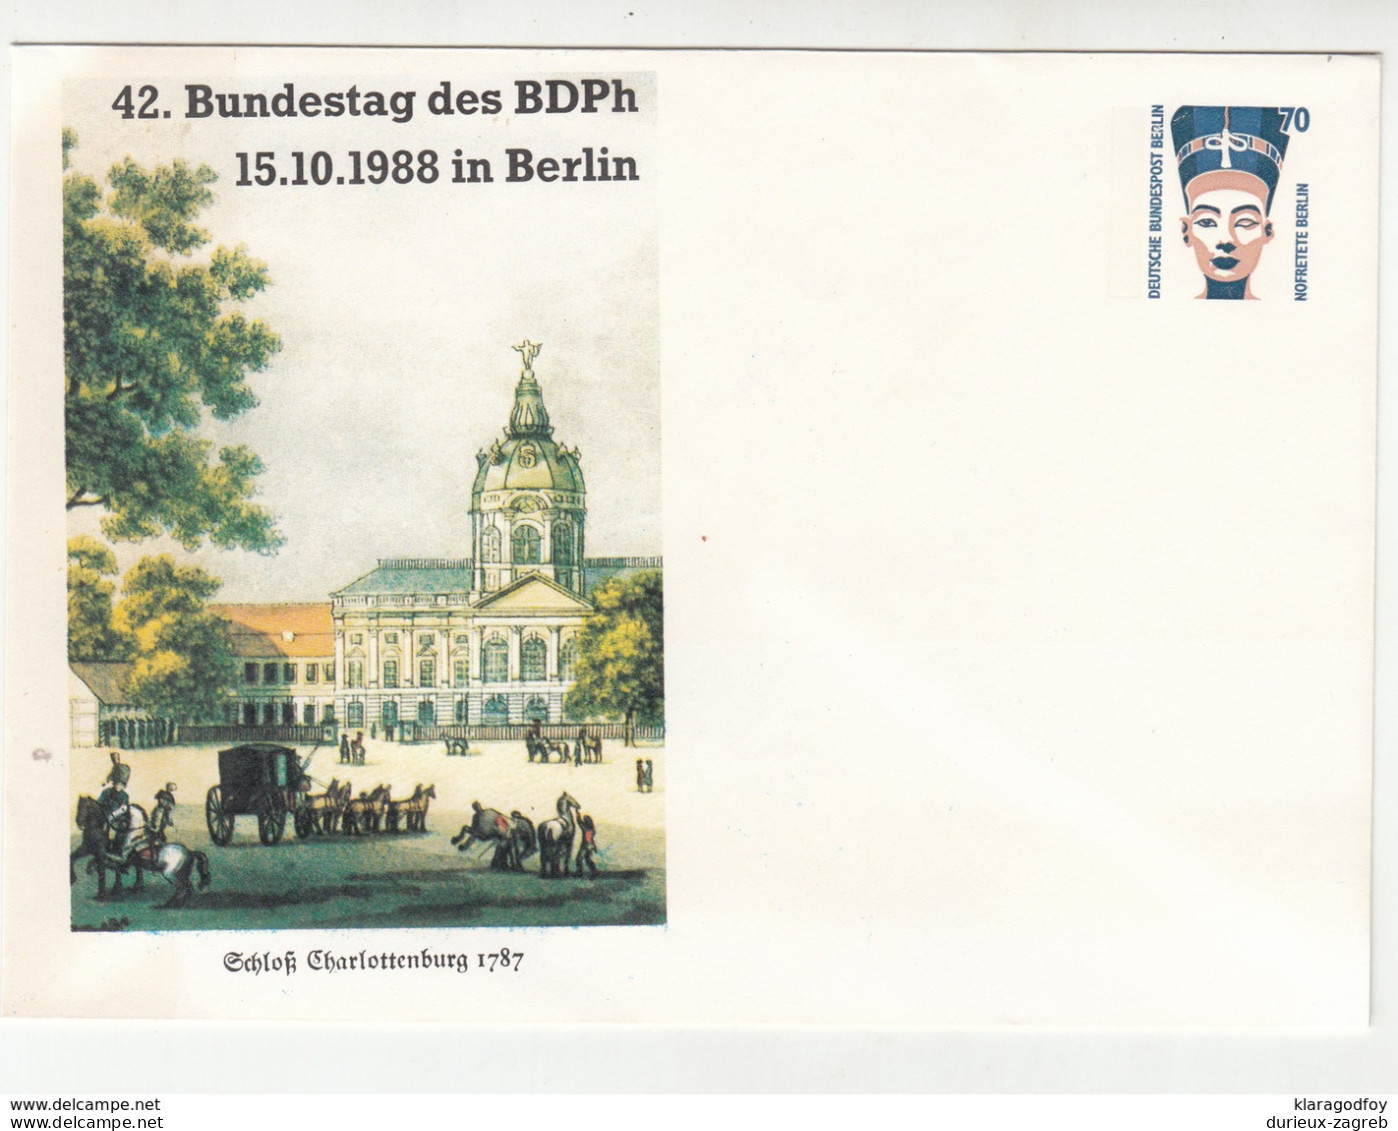 Germany 42. Bundestag Des BDPh Berlin 1988 Illustrated Postal Stationery Letter Cover Unused B200510 - Enveloppes Privées - Neuves